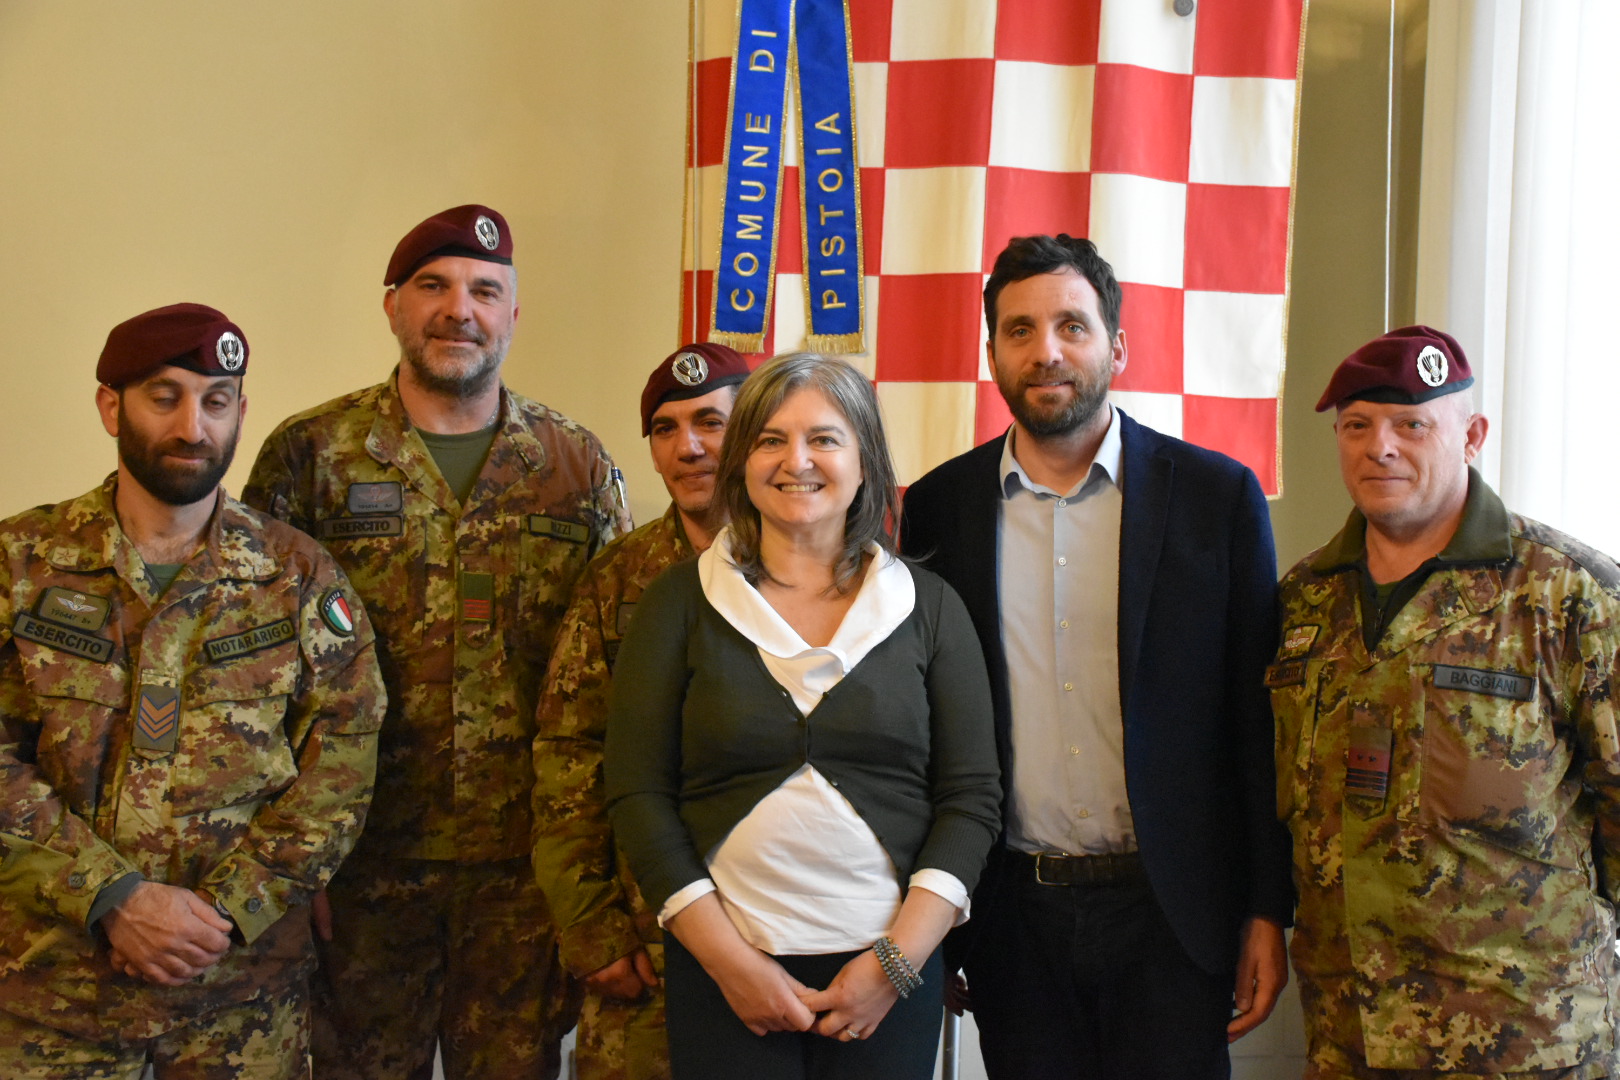  sindaco Alessandro Tomasi, l’assessore Alessandra Frosini e alcuni paracadutisti (foto da comunicato)